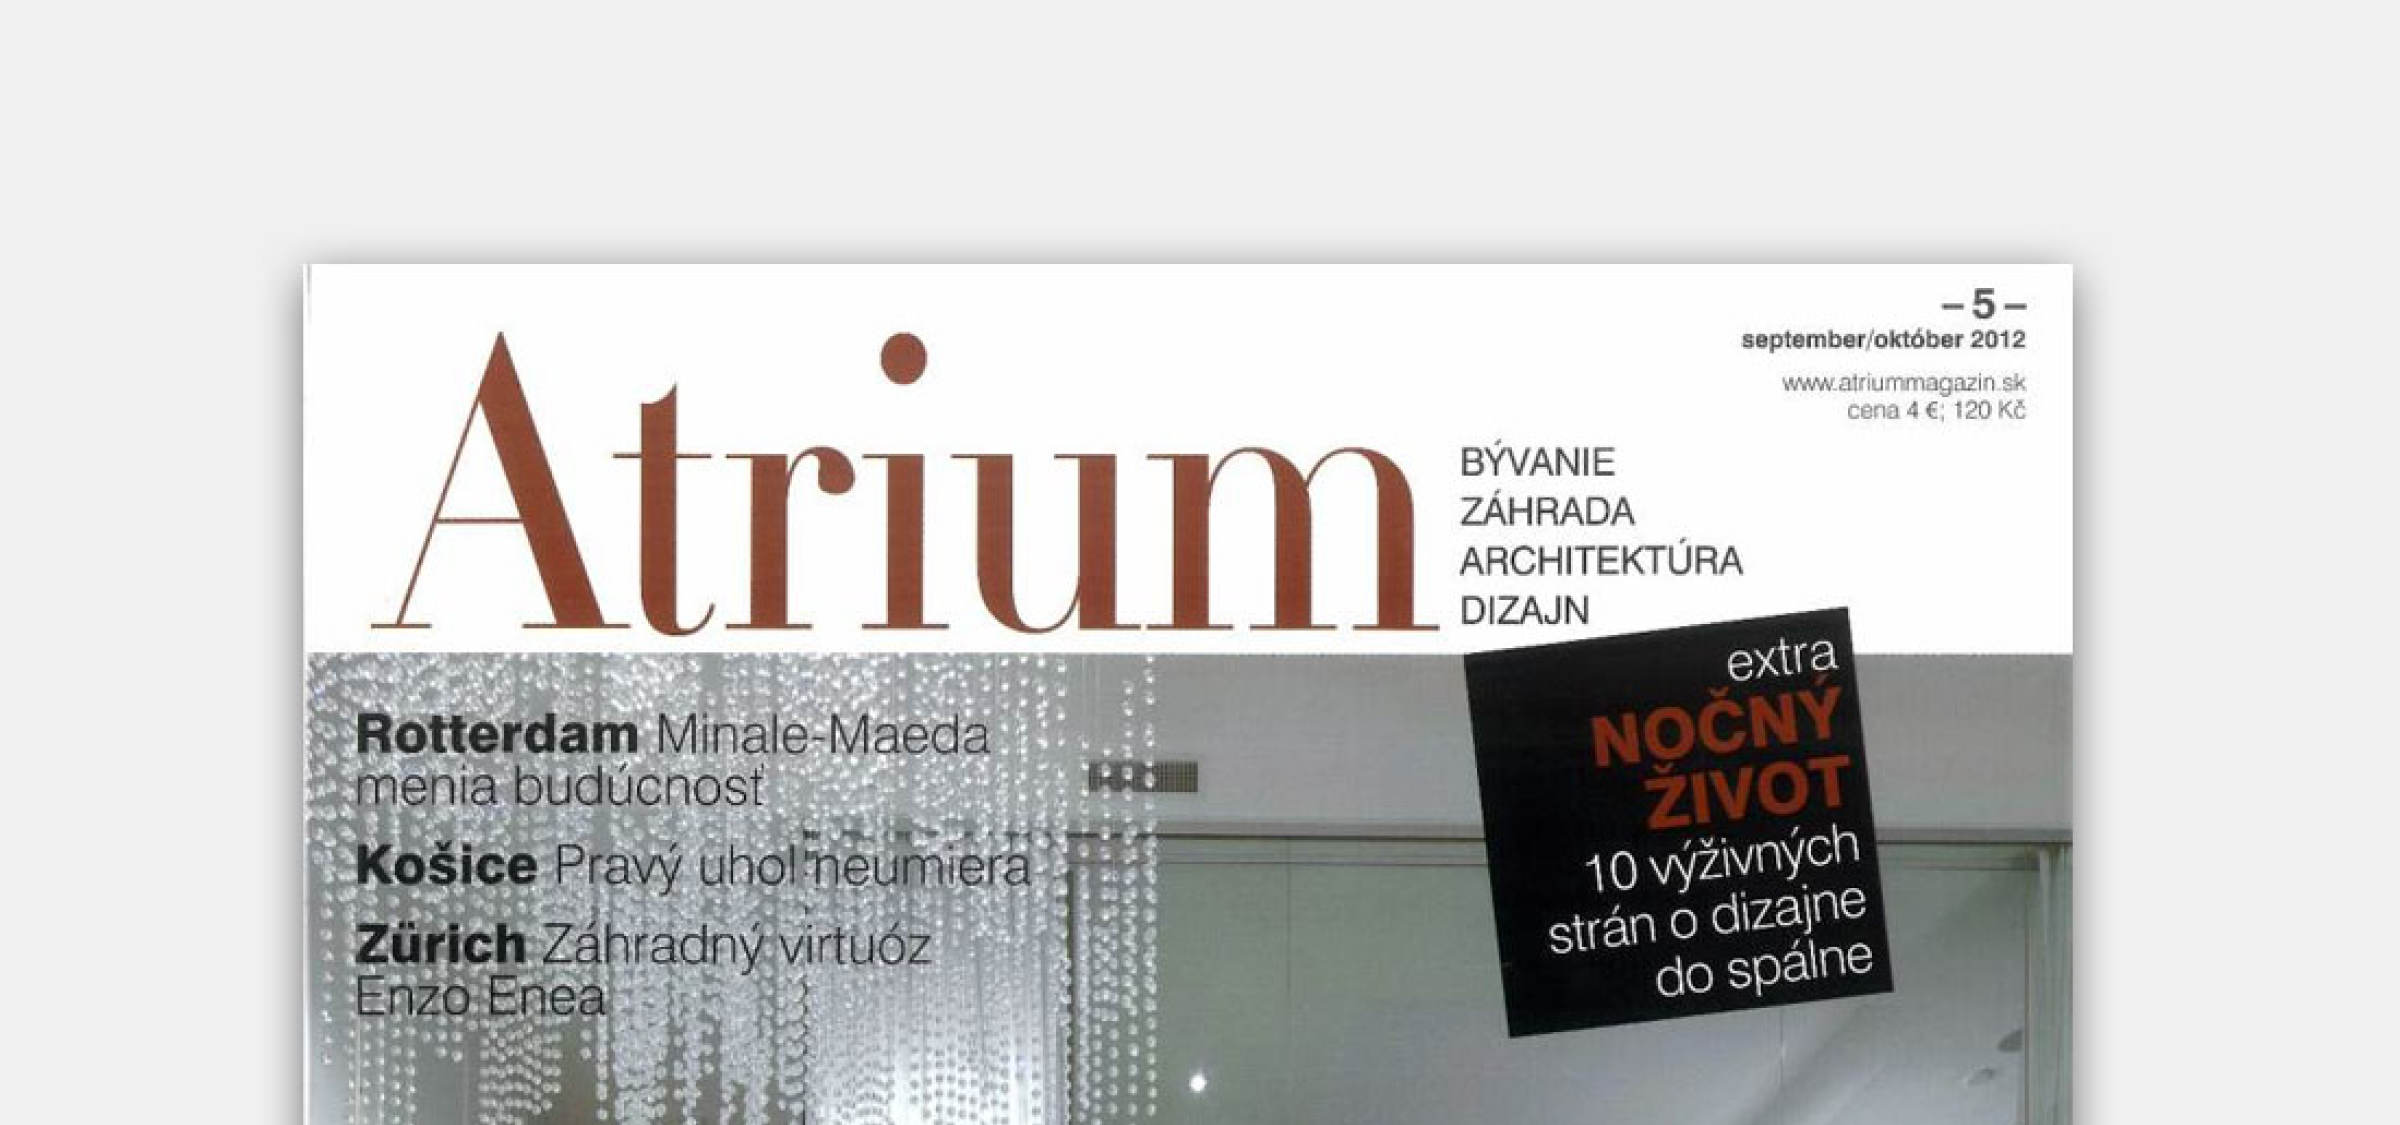 Veľká recenzia Vily P v časopise Atrium | Aktuálne | Atrium Architekti